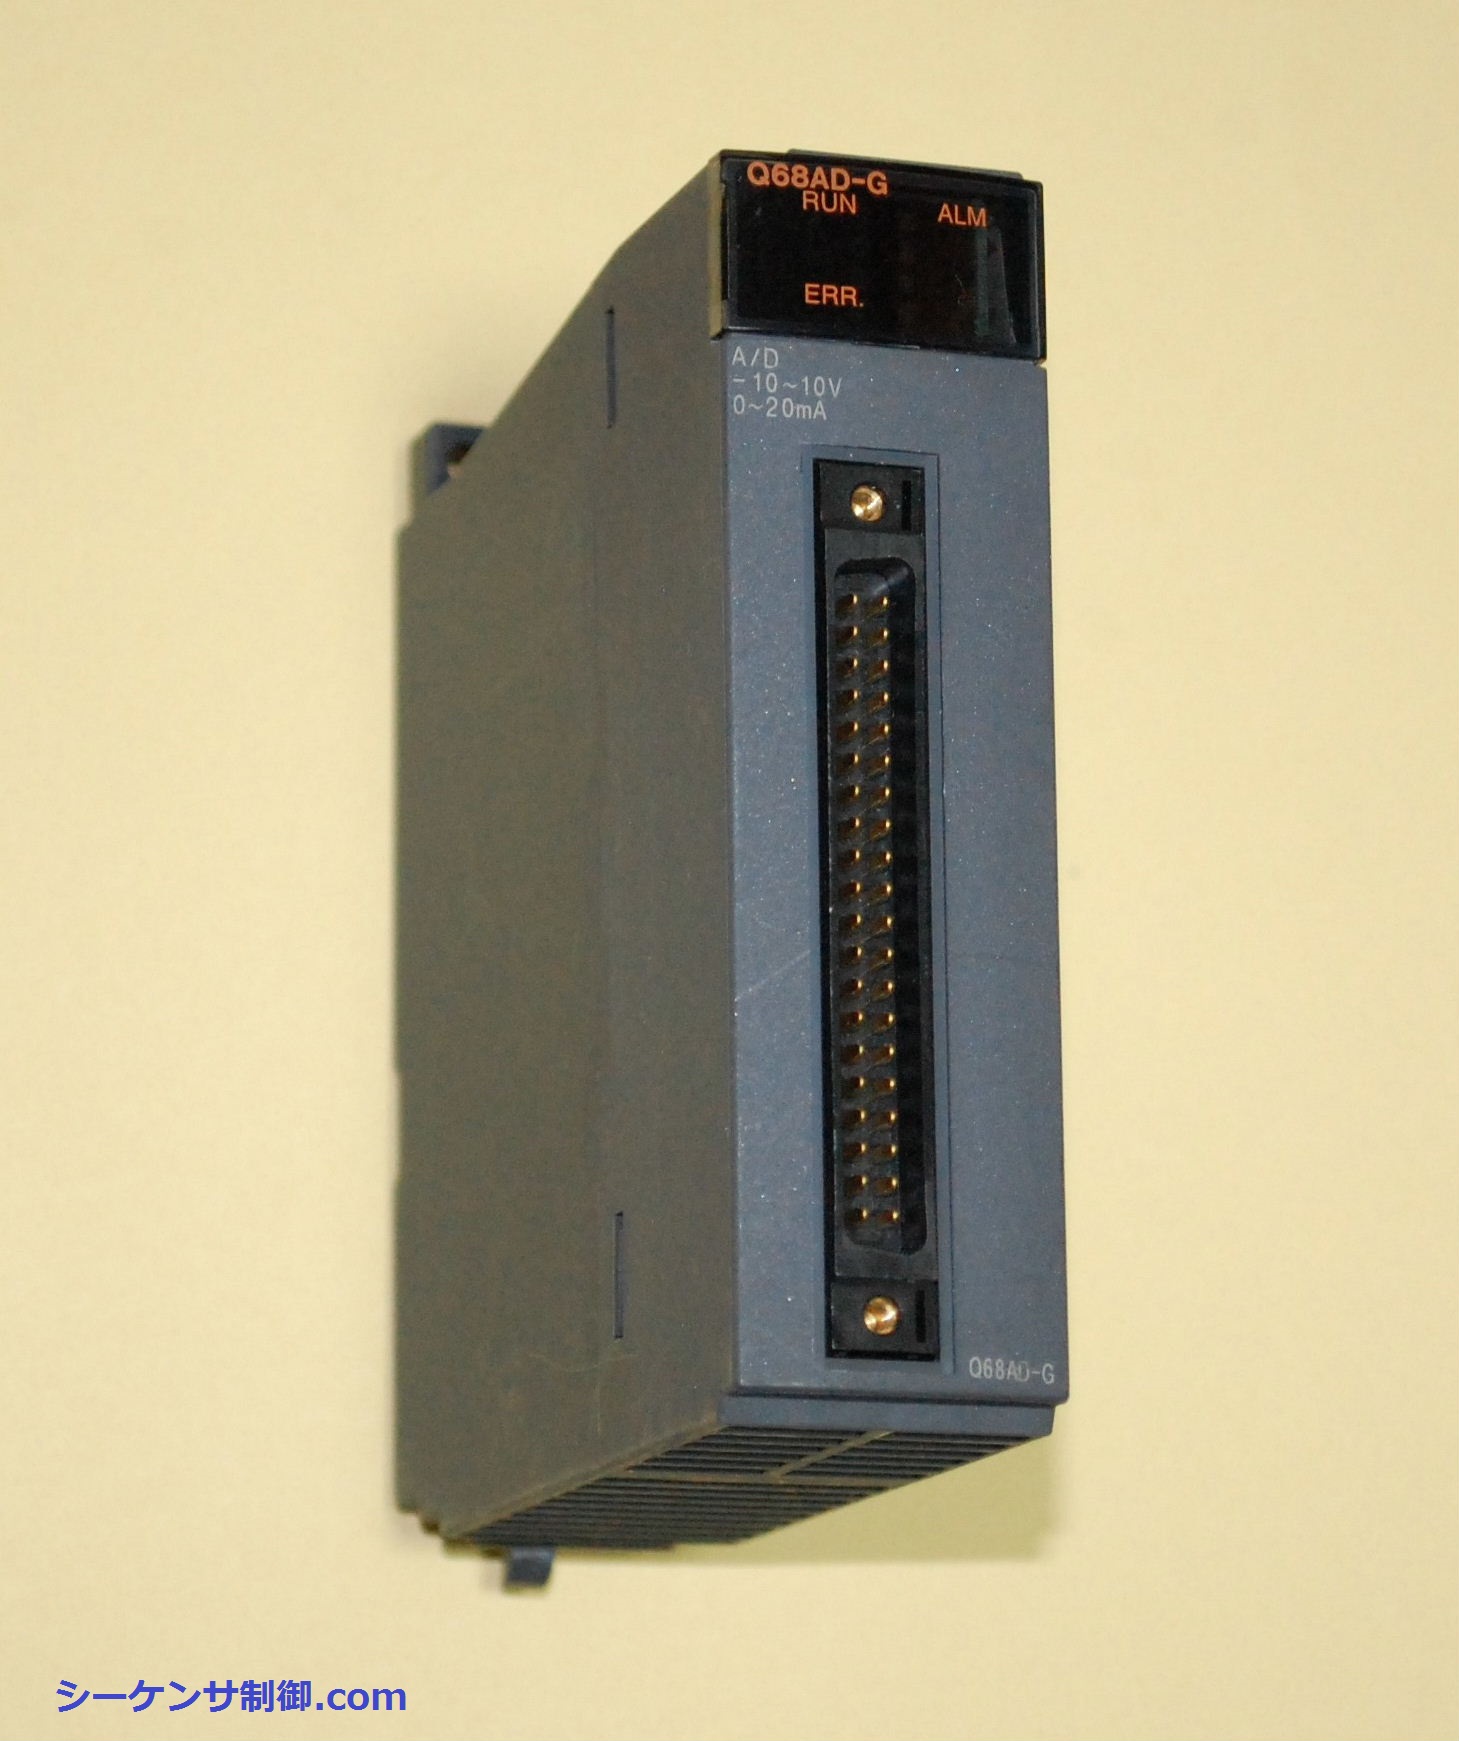 三菱シーケンサ ADコンバータ(Q68AD-G)の使い方 デジタル圧力センサー 